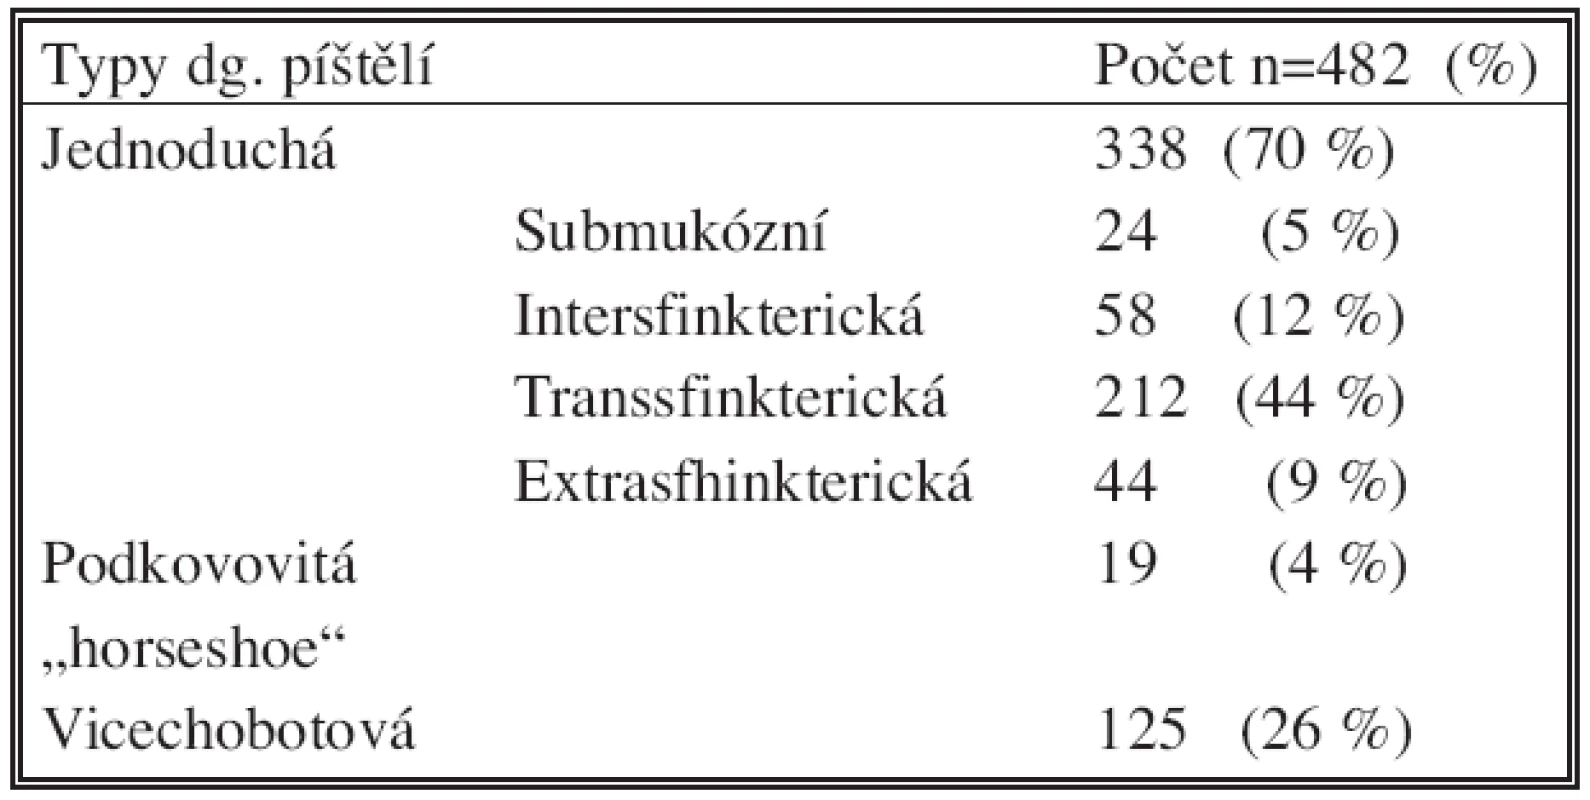 Typy diagnostikovaných perianálních píštělí ve vyšetřovaném souboru
Tab. 2: Types of perianal fistula diagnosed in examined group